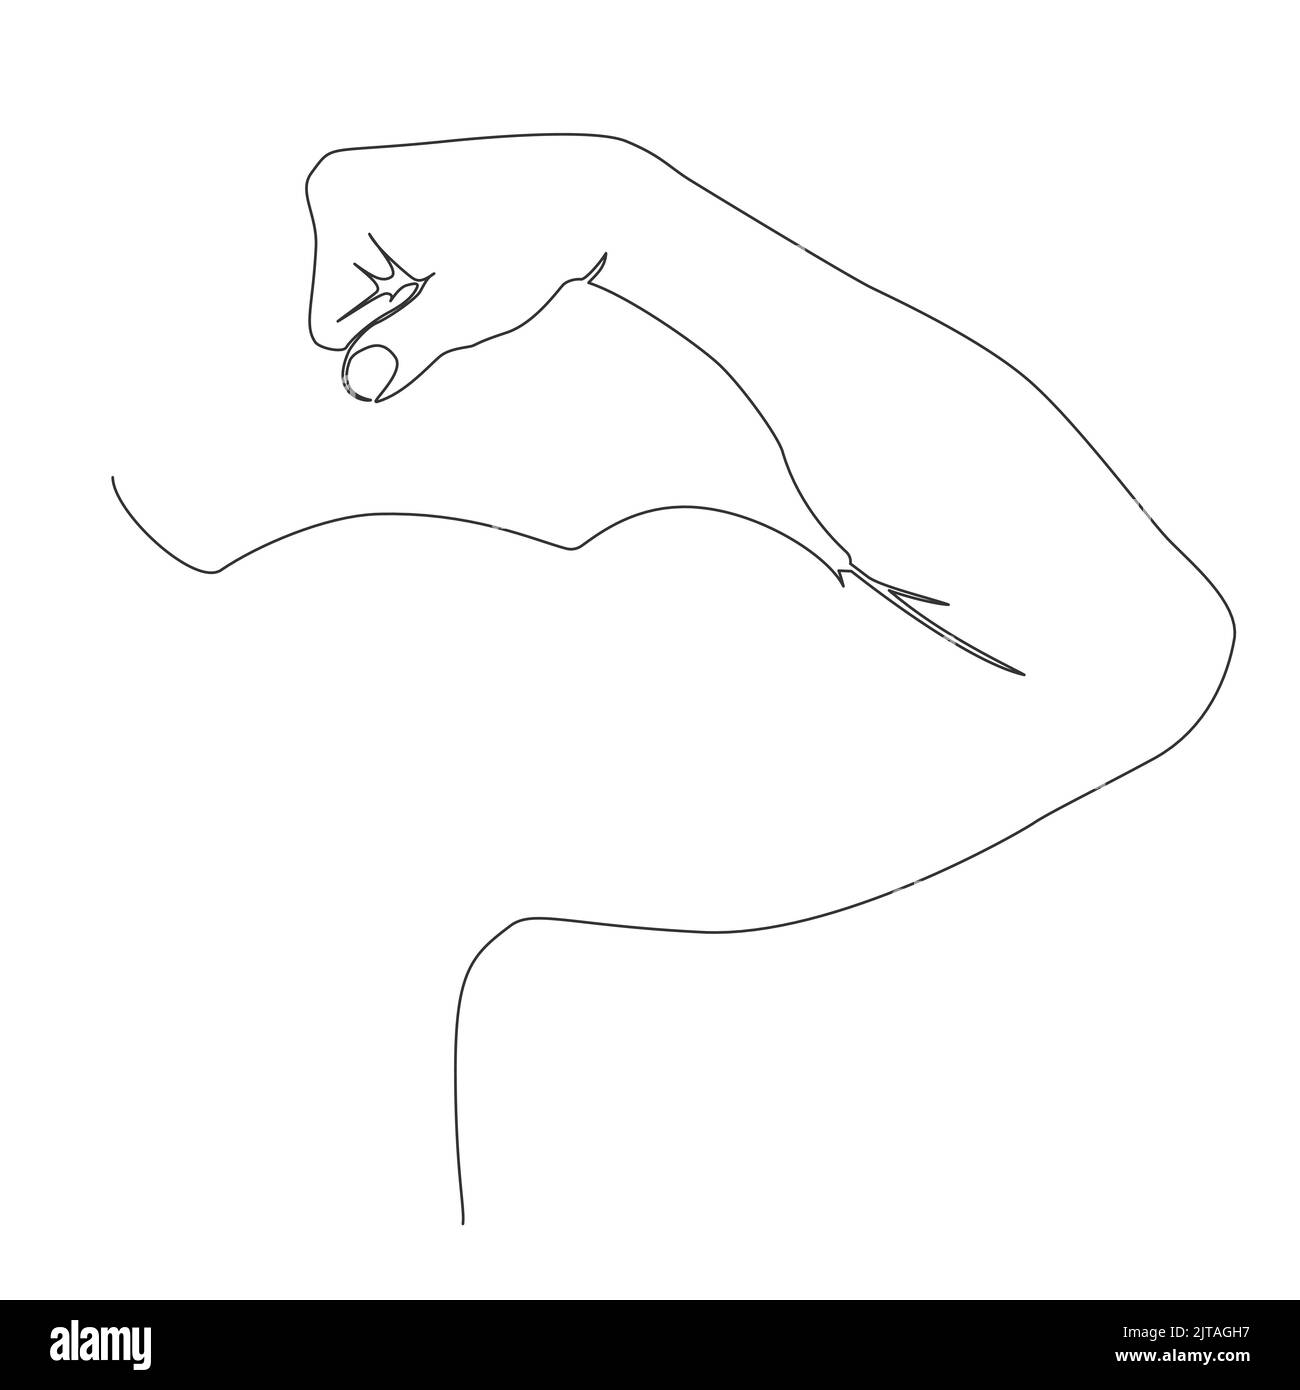 dibujo de una sola línea de flexión muscular del brazo fuerte, ilustración vectorial de arte lineal Ilustración del Vector